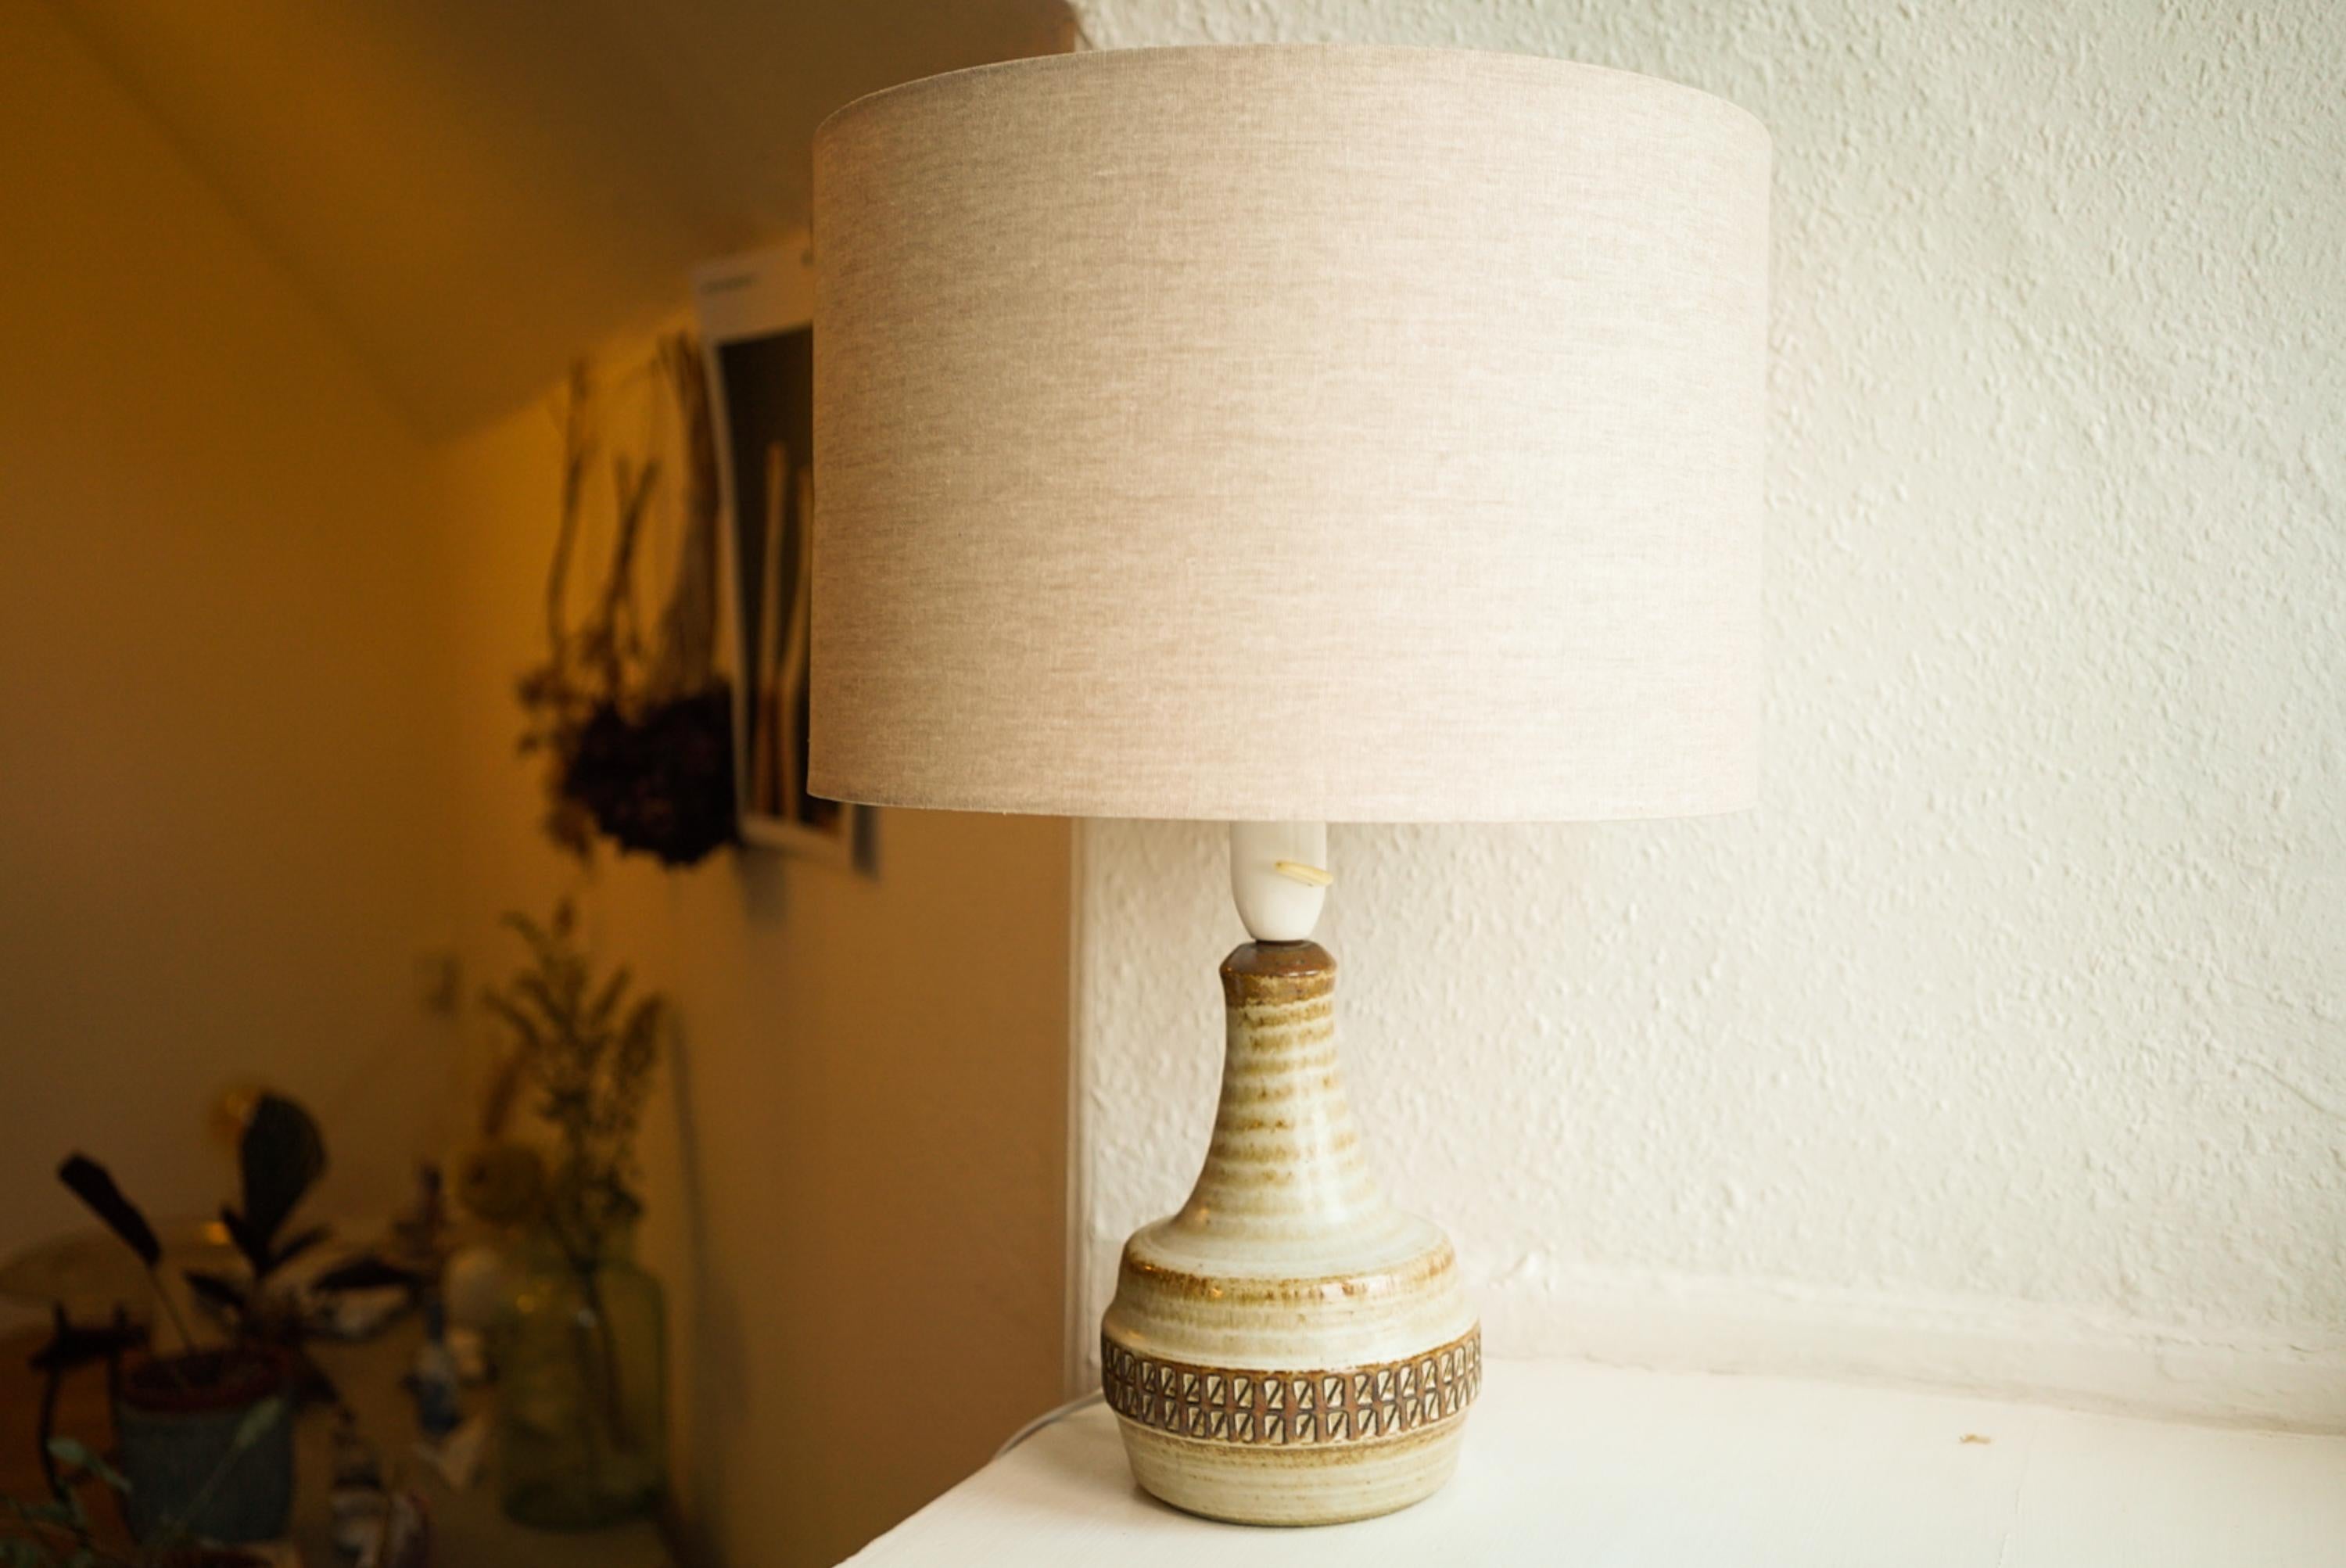 Lampe de table en grès fabriquée à la main par Josef Simon pour Danish Søholm, situé sur l'île de Bornholm au Danemark, dans les années 1960.

Estampillé et signé sur la base.

Vendu sans abat-jour. La hauteur comprend la douille. Entièrement